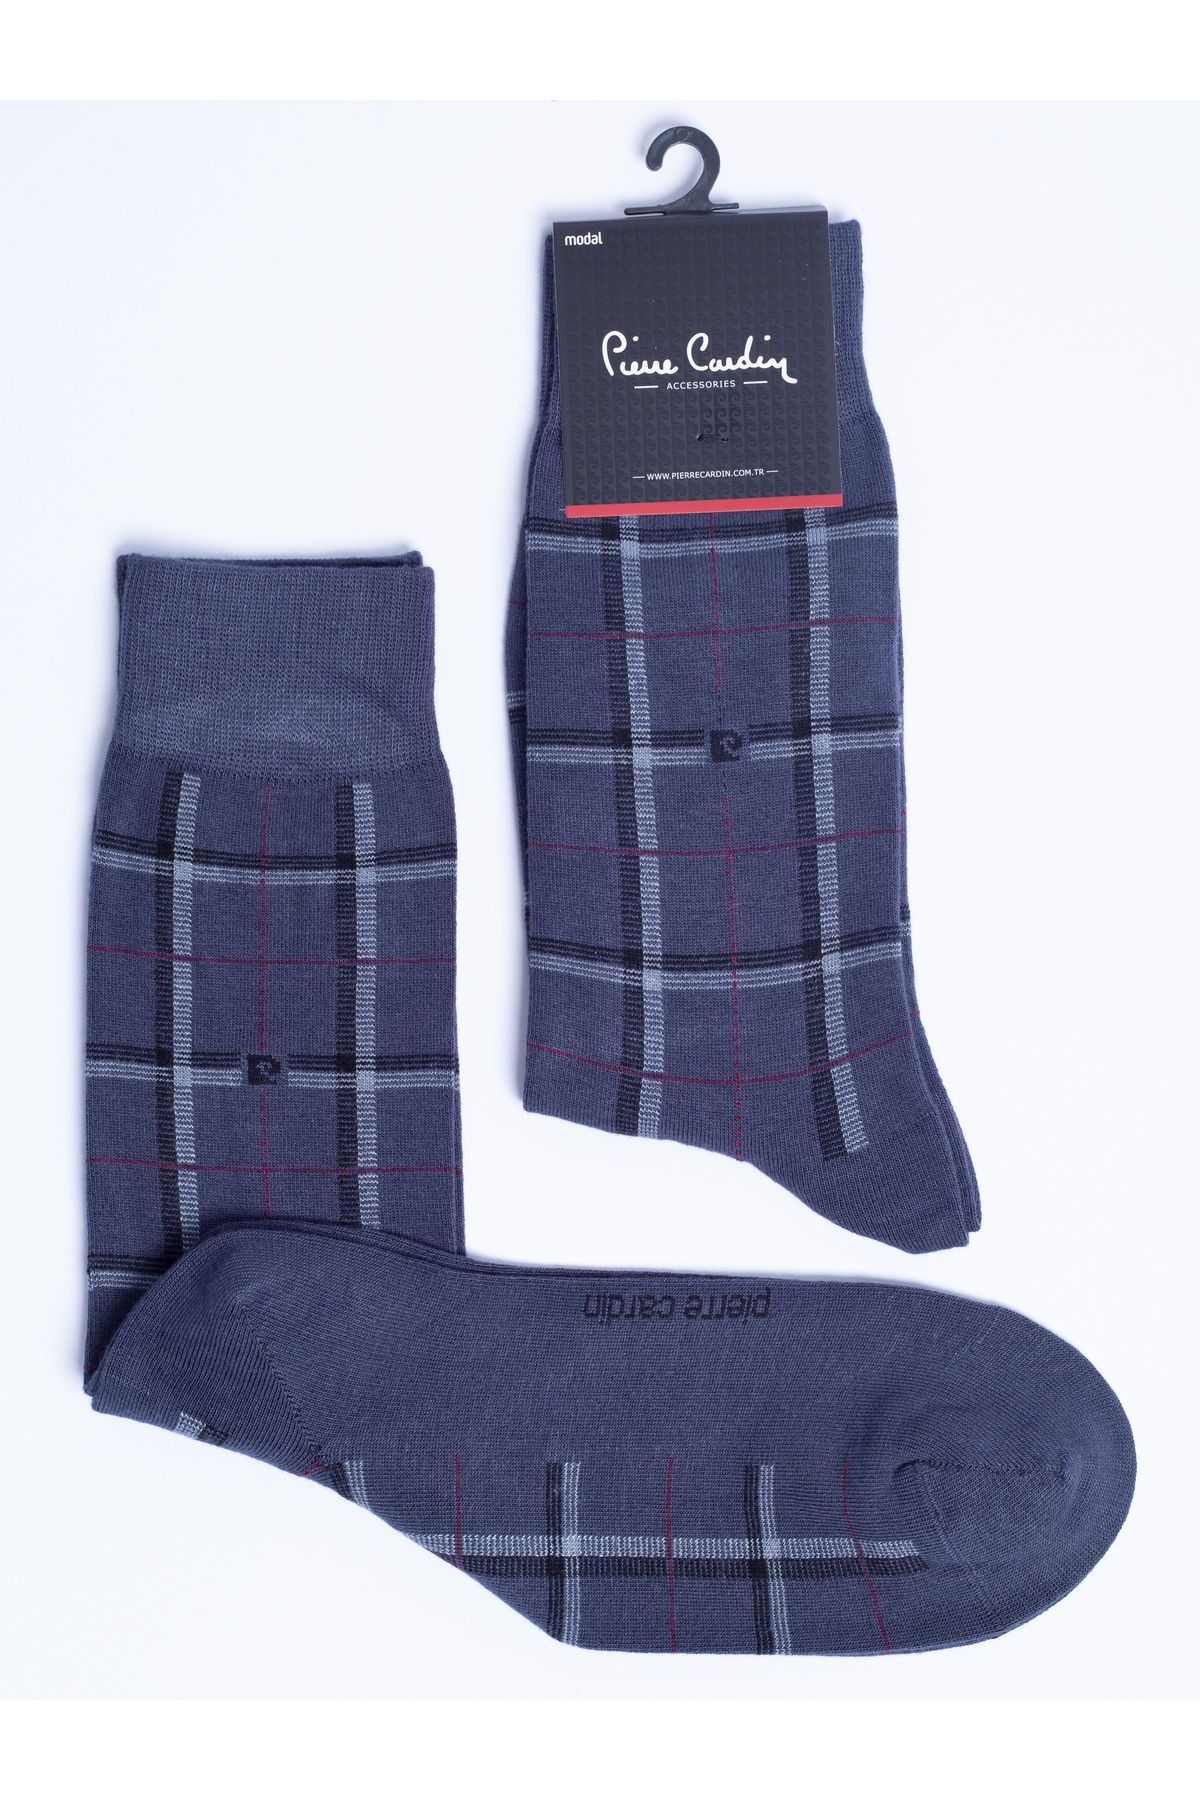 Pierre Cardin PİERRE CARDİN Modal ANTRASİT 6’lı Erkek Uzun Soket Çorap Pasco Pc-925